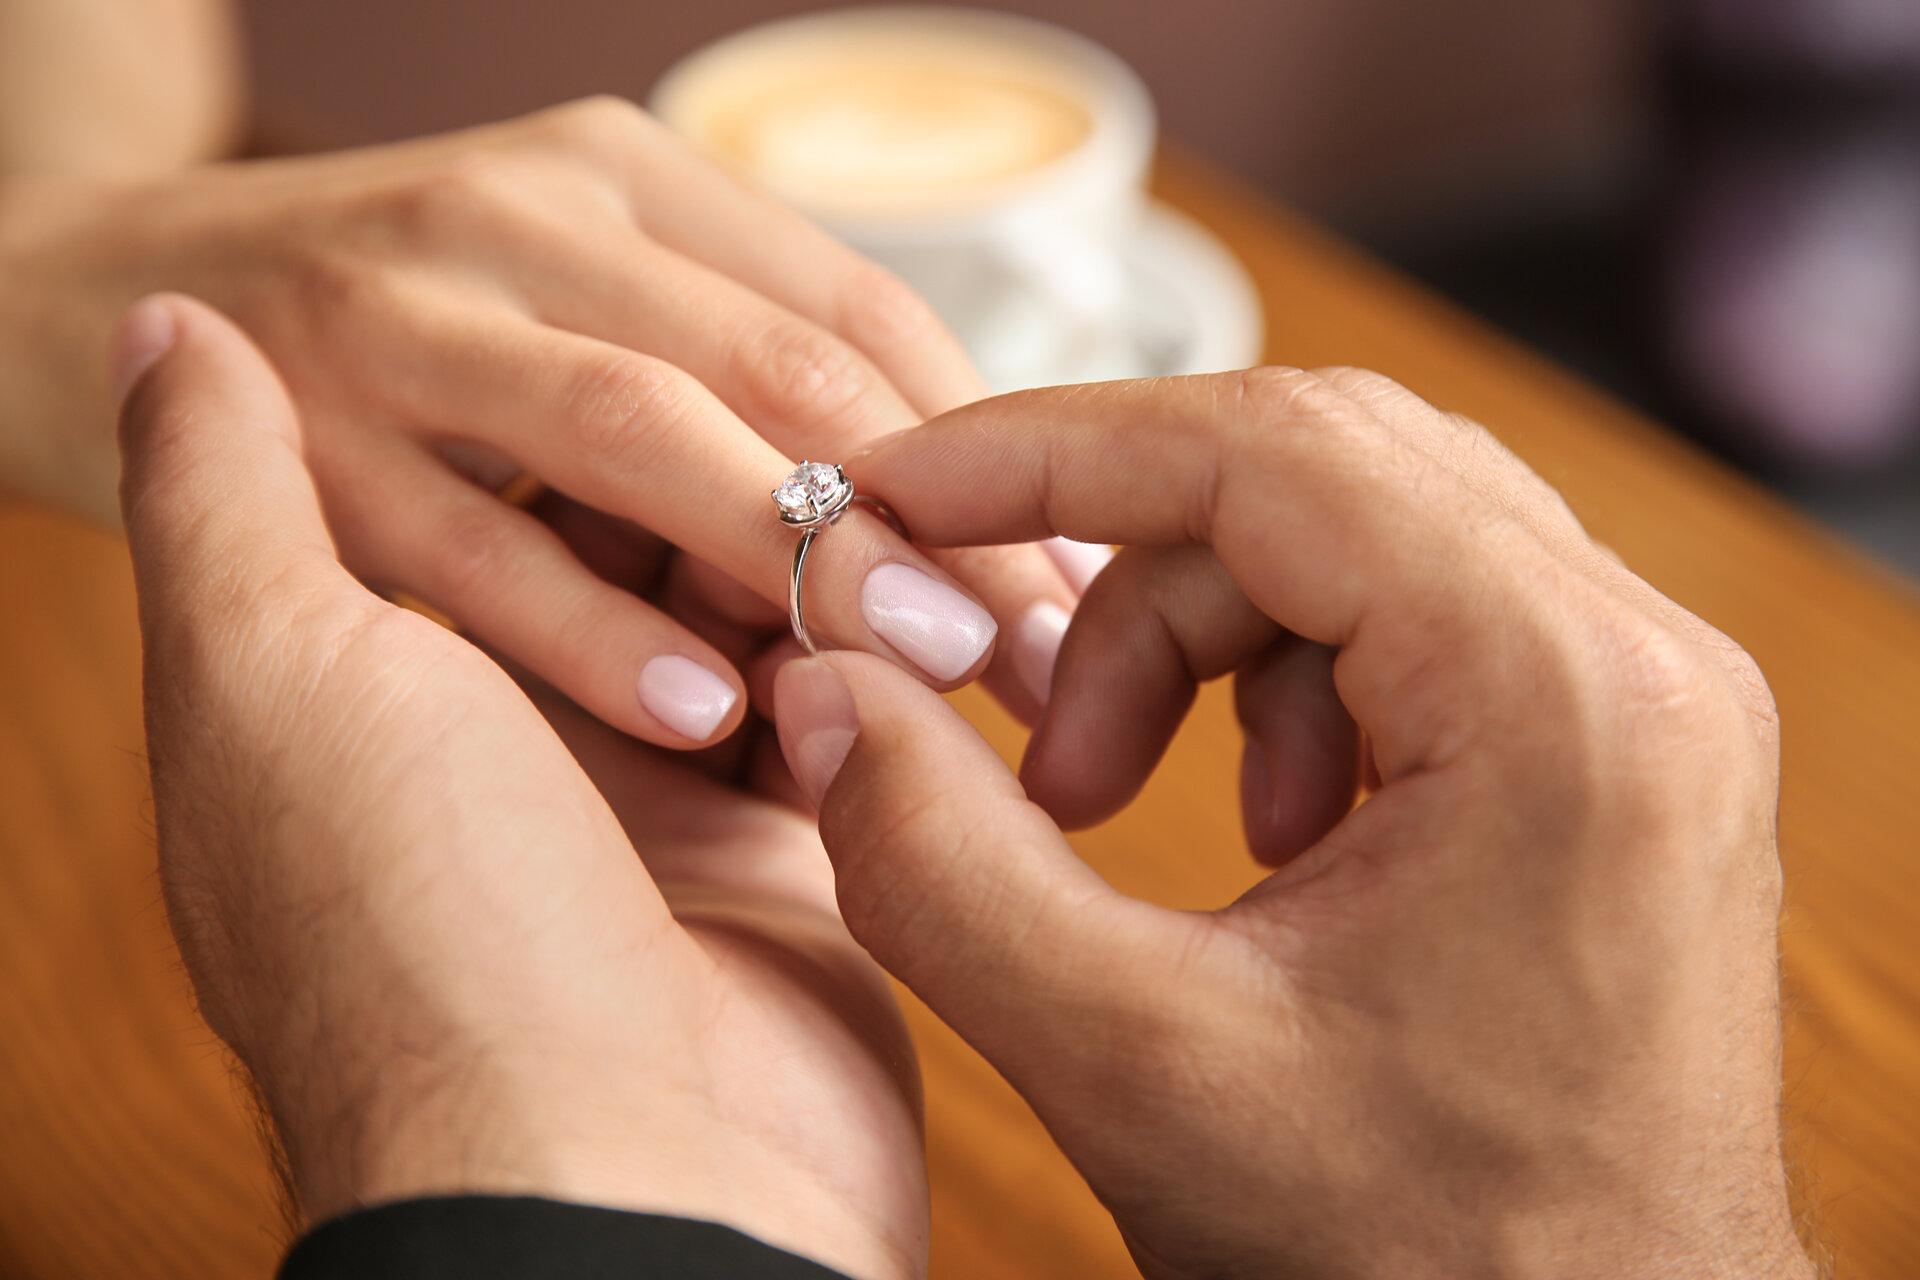 Mann steckt seiner Freundin im Café einen Verlobungsring an den Finger, Nahaufnahme